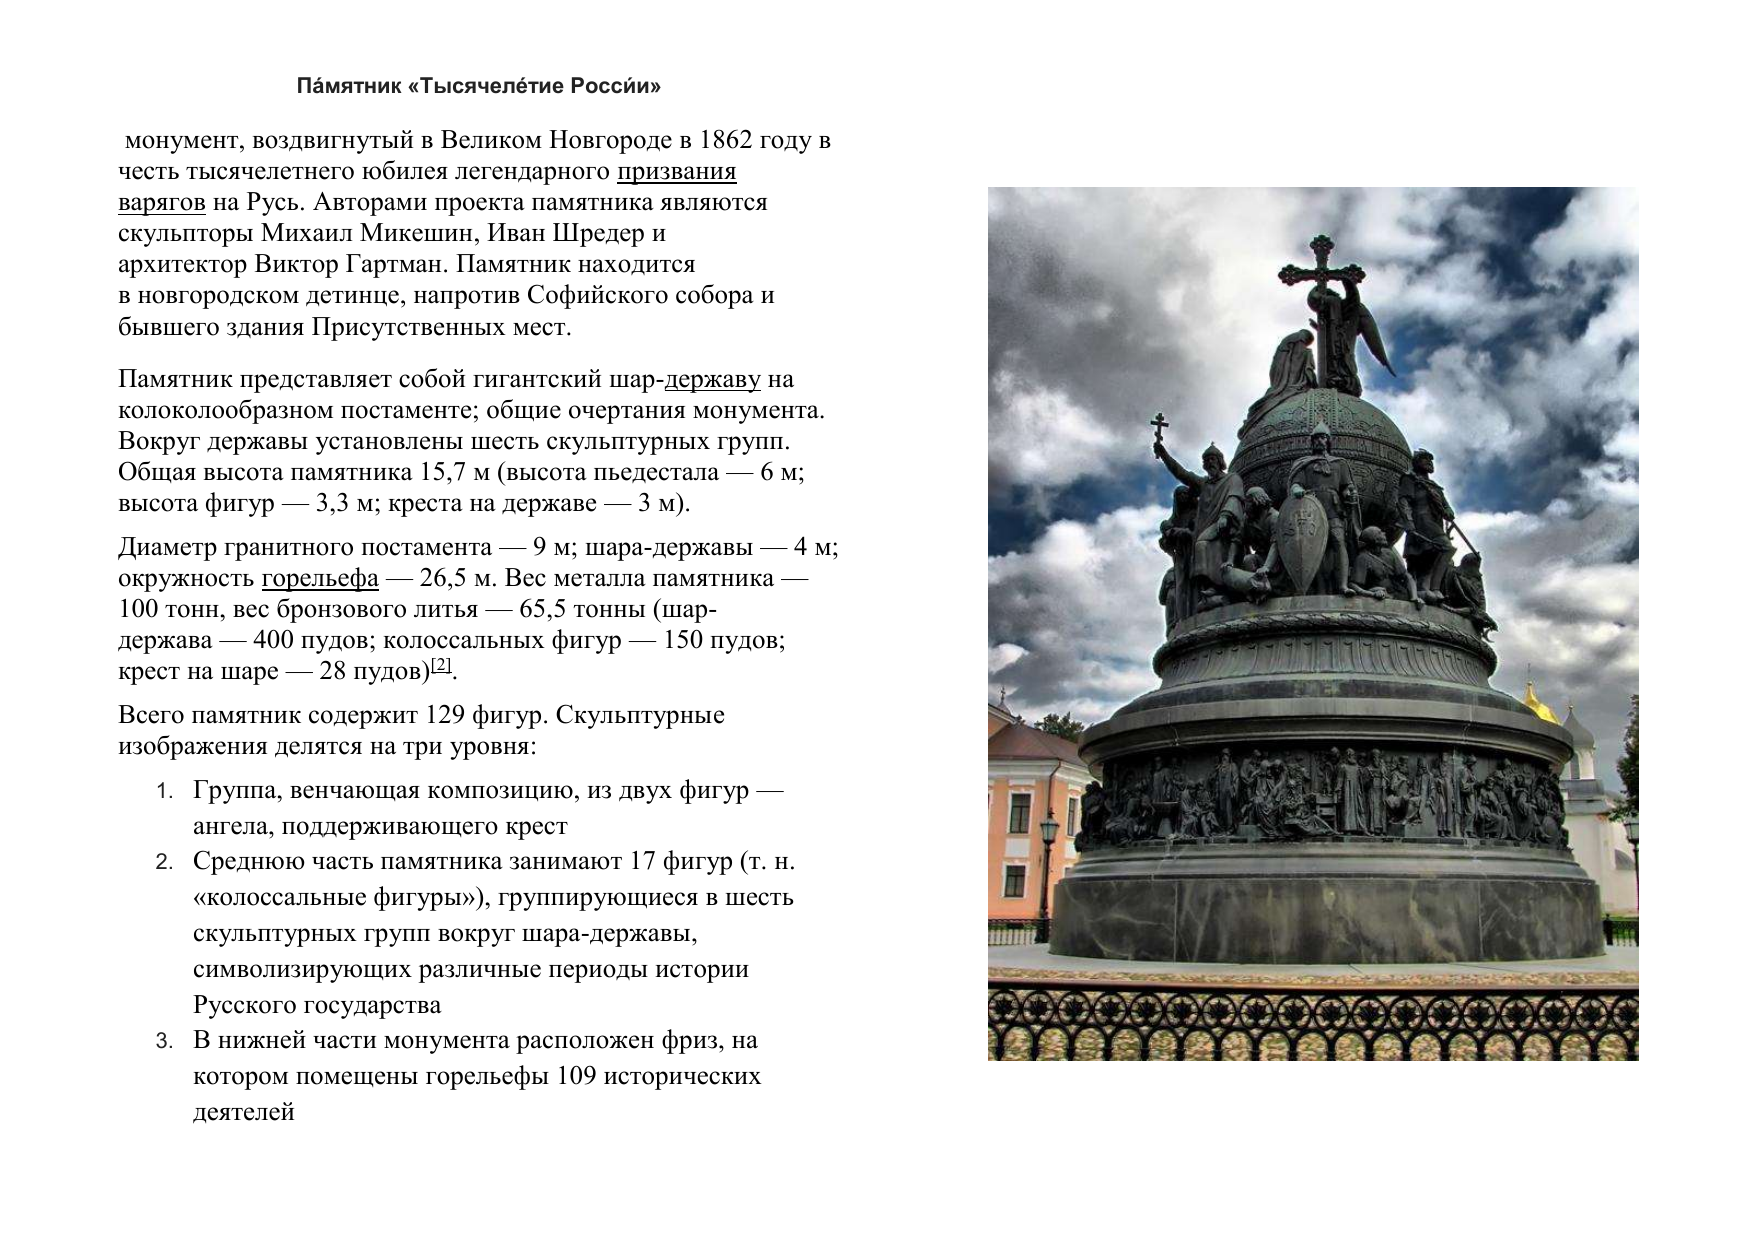 Памятник тысячелетия Руси в Великом Новгороде описание